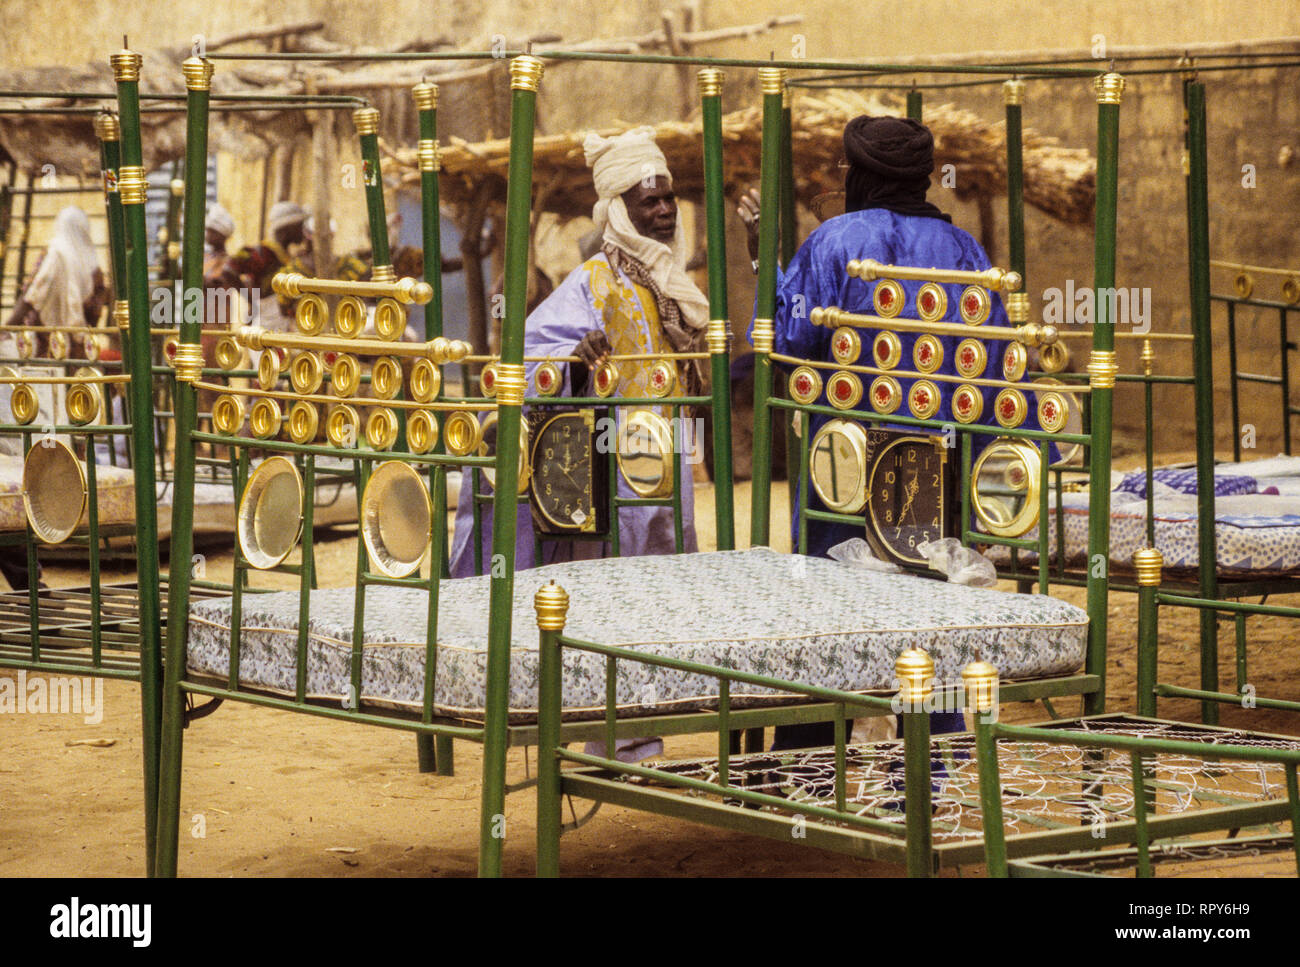 Betten für den Verkauf auf dem Markt, Baleyara, Niger. Stockfoto